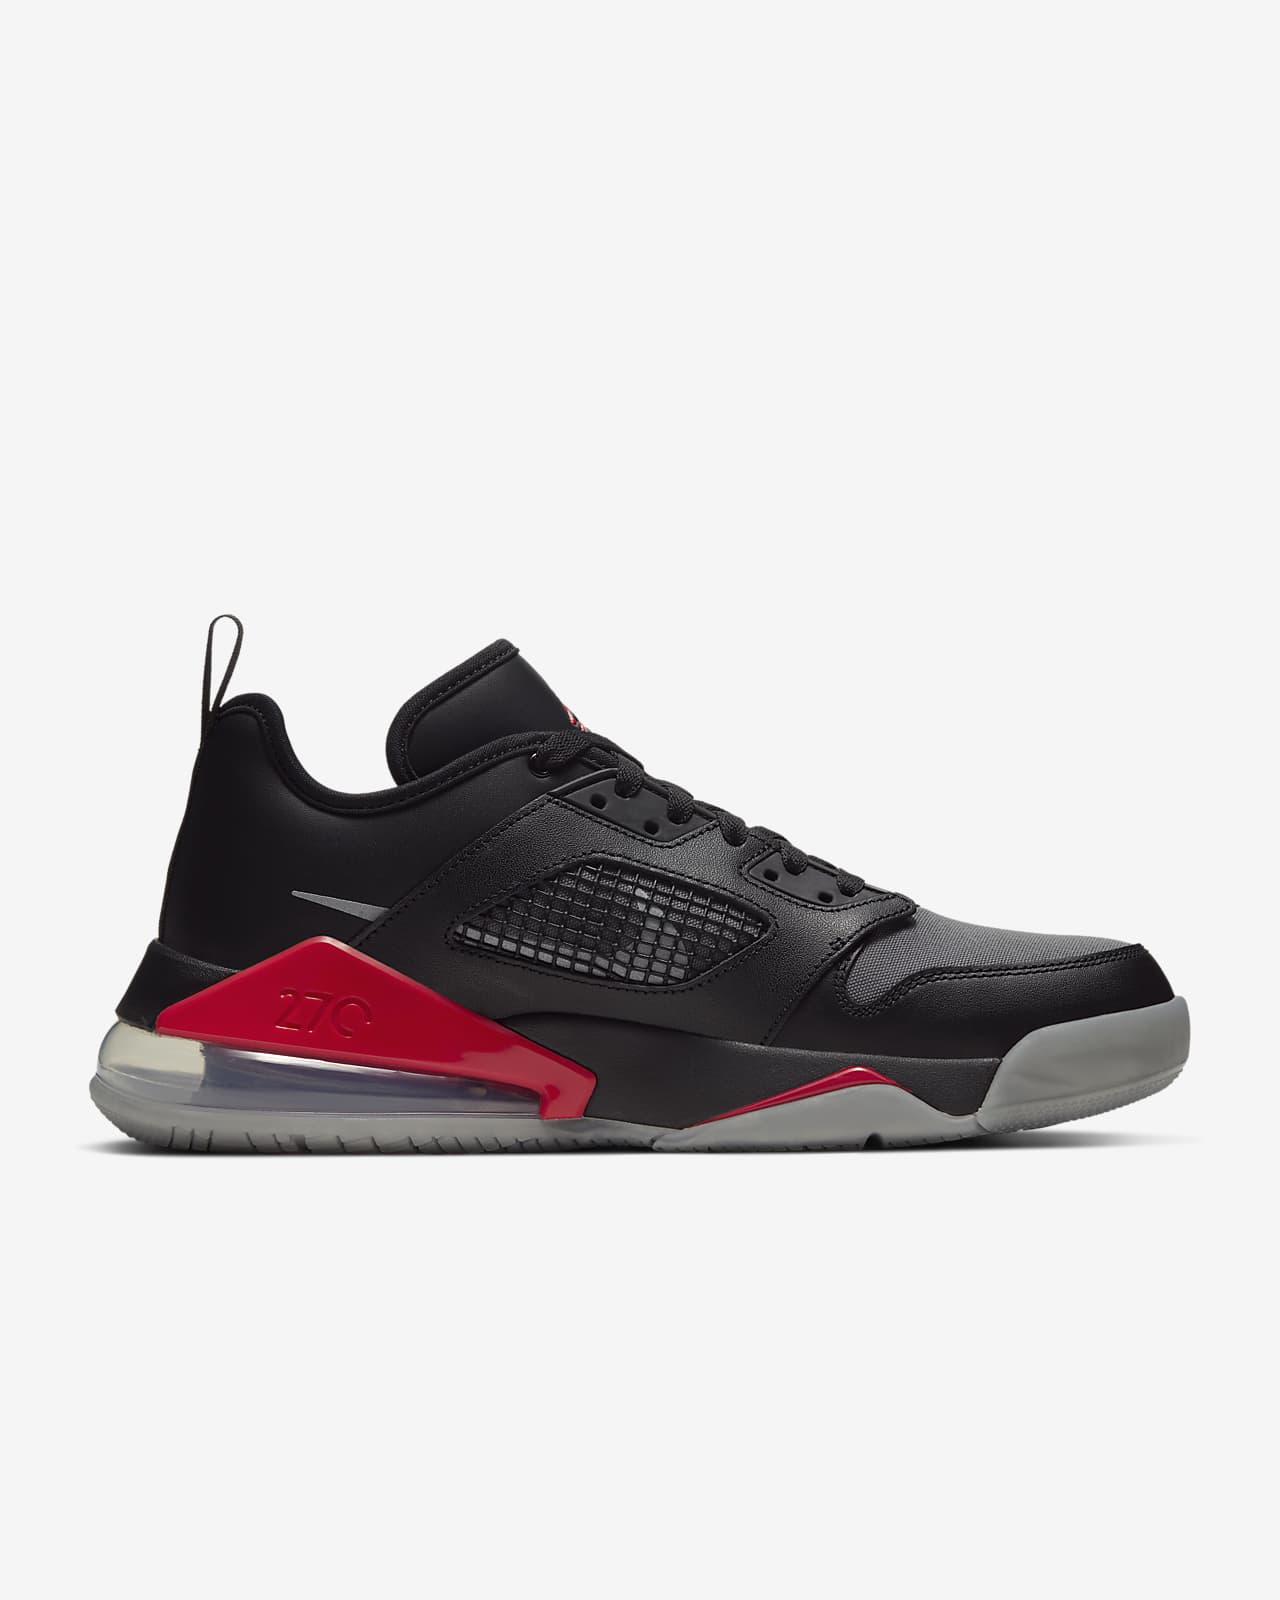 Jordan Mars 270 Low Men's Shoe. Nike MY